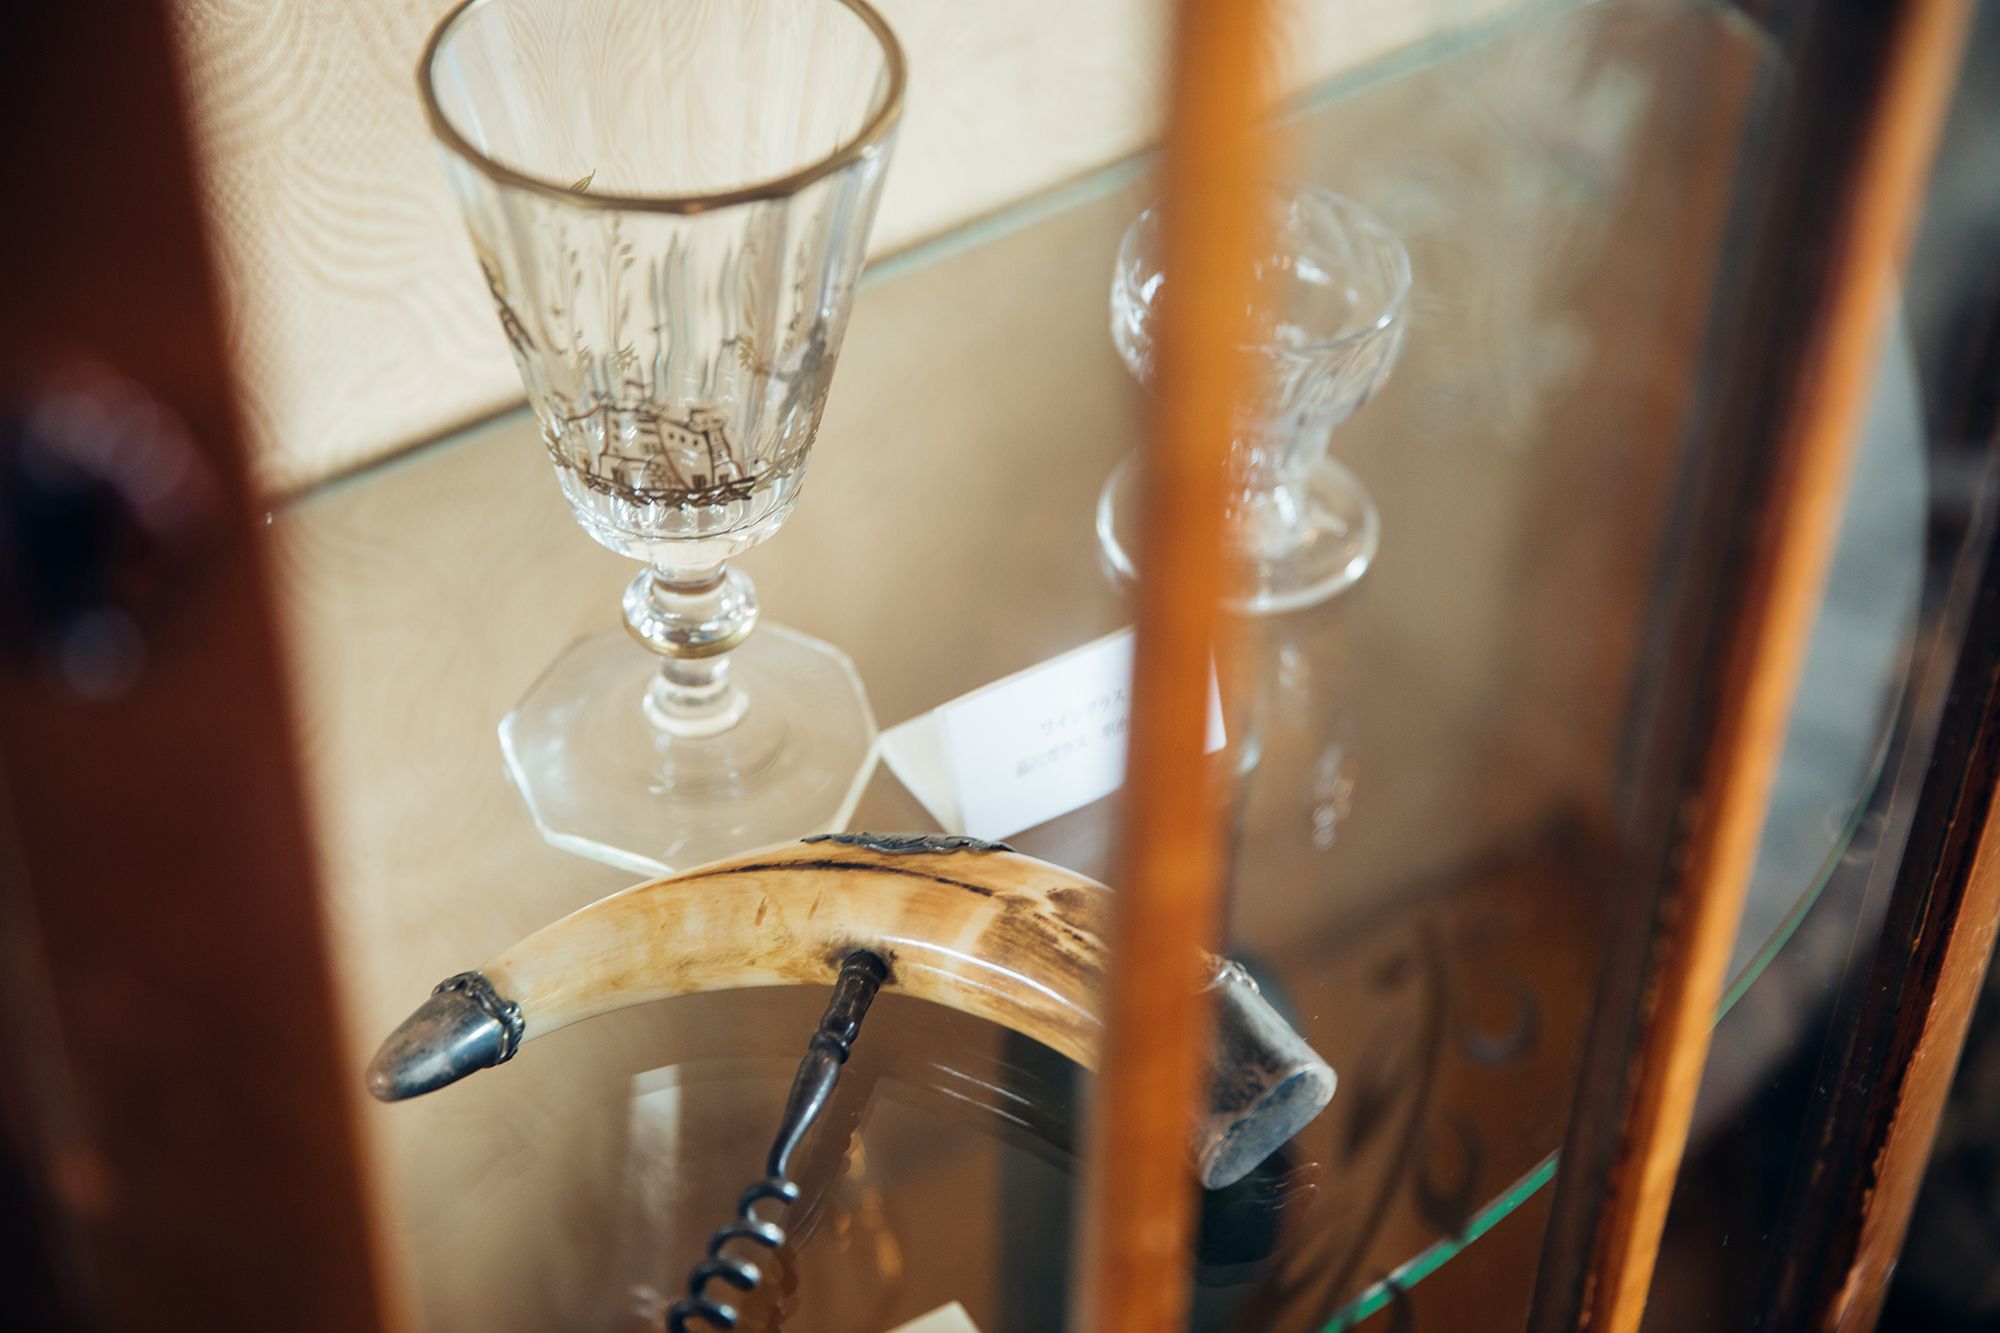 ワイナリーのテイスティングスペースには、ショーケースに美しいグラスやオープナーなどのツールが飾られている。